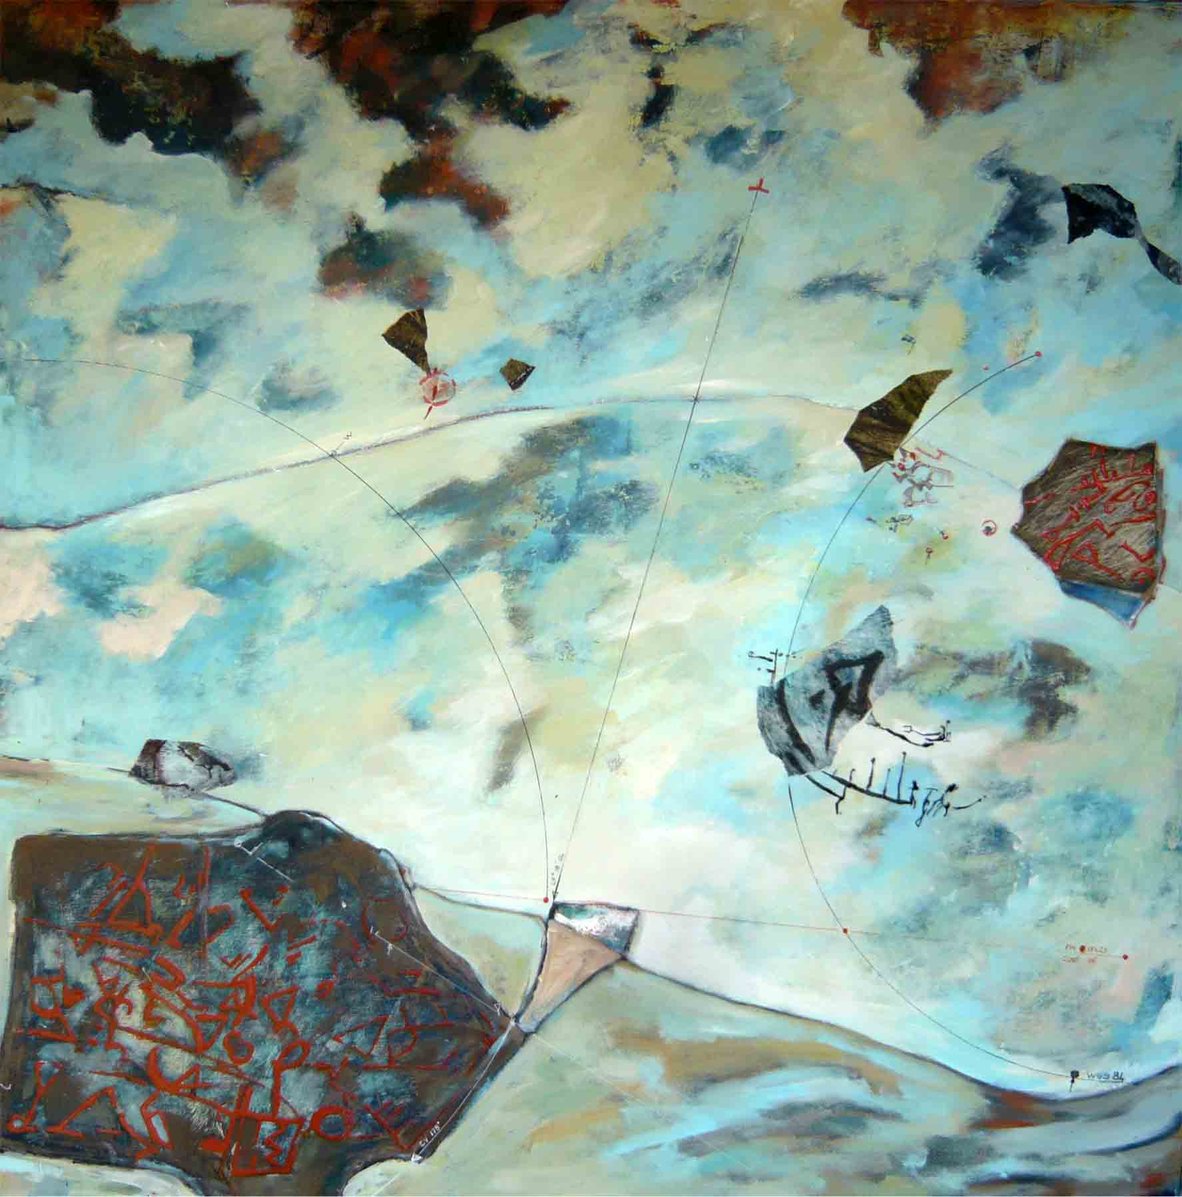 Sky dream bay<br/><span>Acrylique sur toile, craie grasse, encre et papiers préparés en collagraphie
100 cm x 100 cm</span>